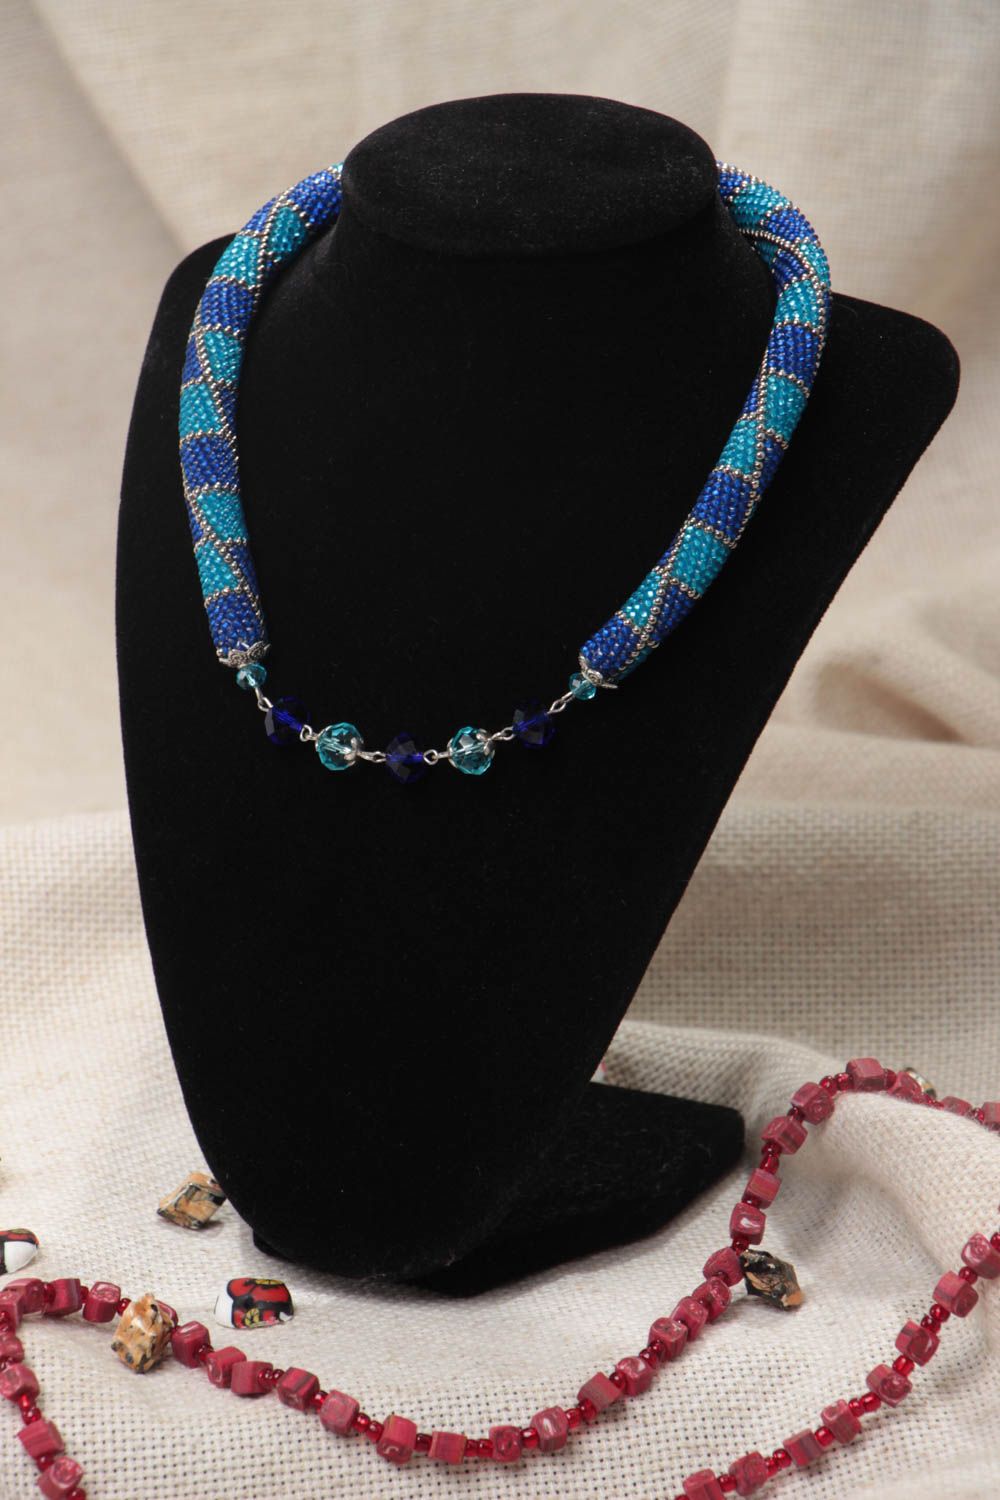 Ожерелье из бисера в голубых тонах стильное объемное необычное ручной работы фото 1